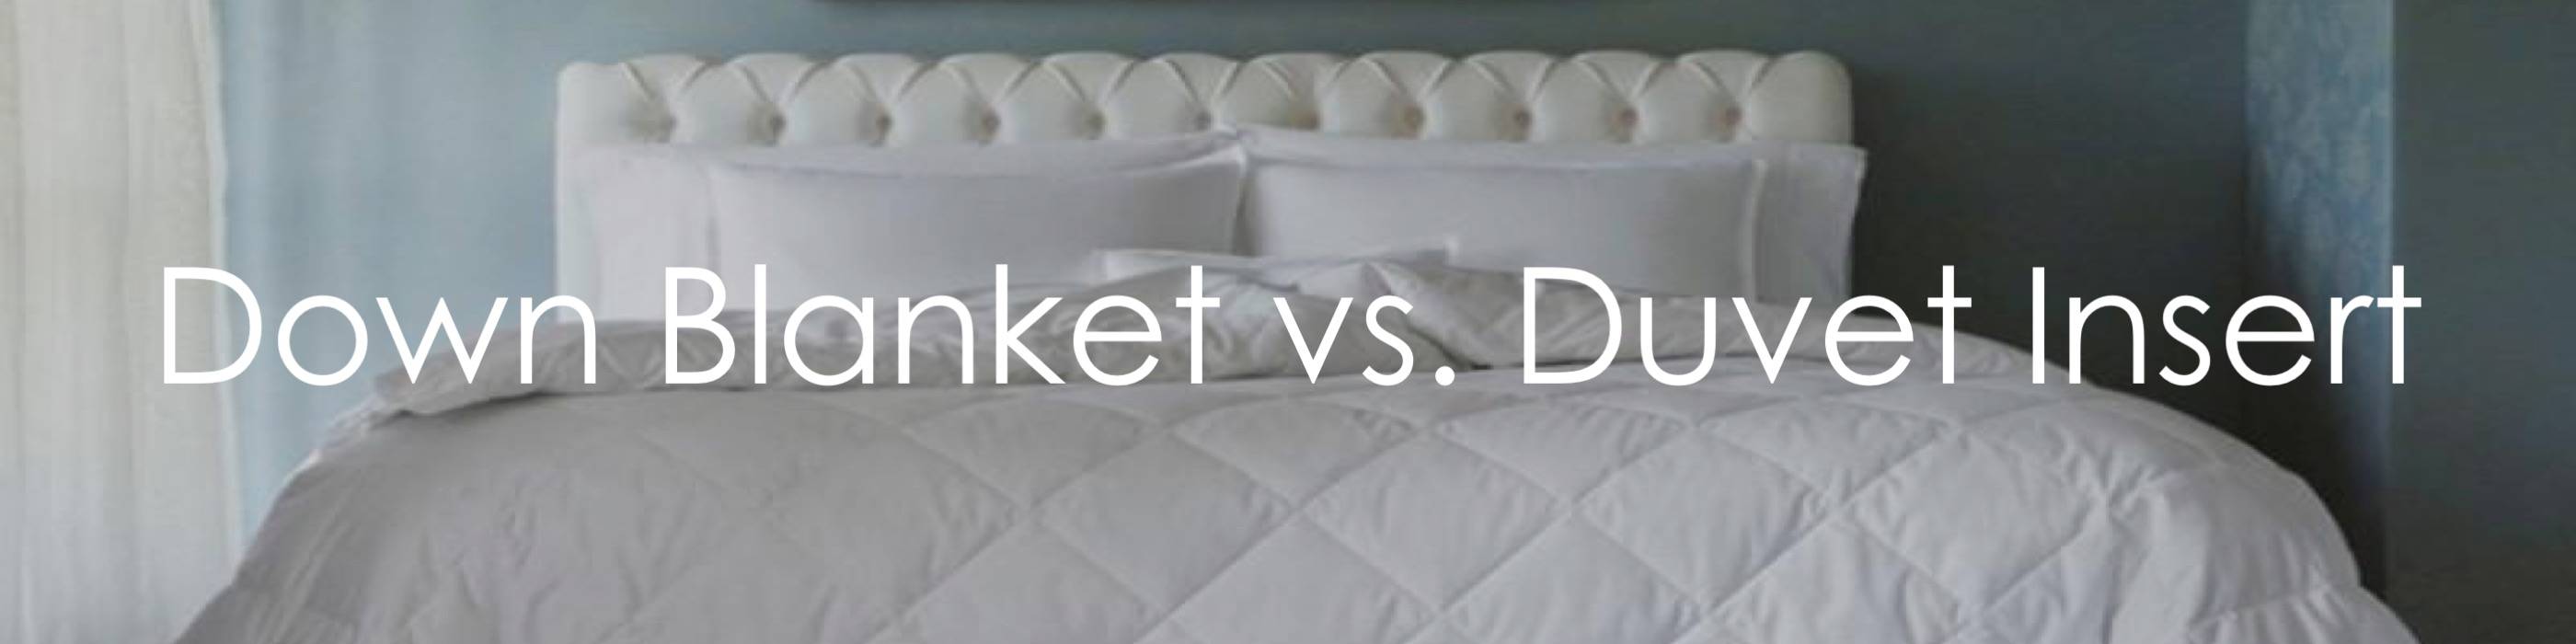 Down Blanket Cover Vs Duvet Insert, Can You Put A Duvet Cover On Blanket